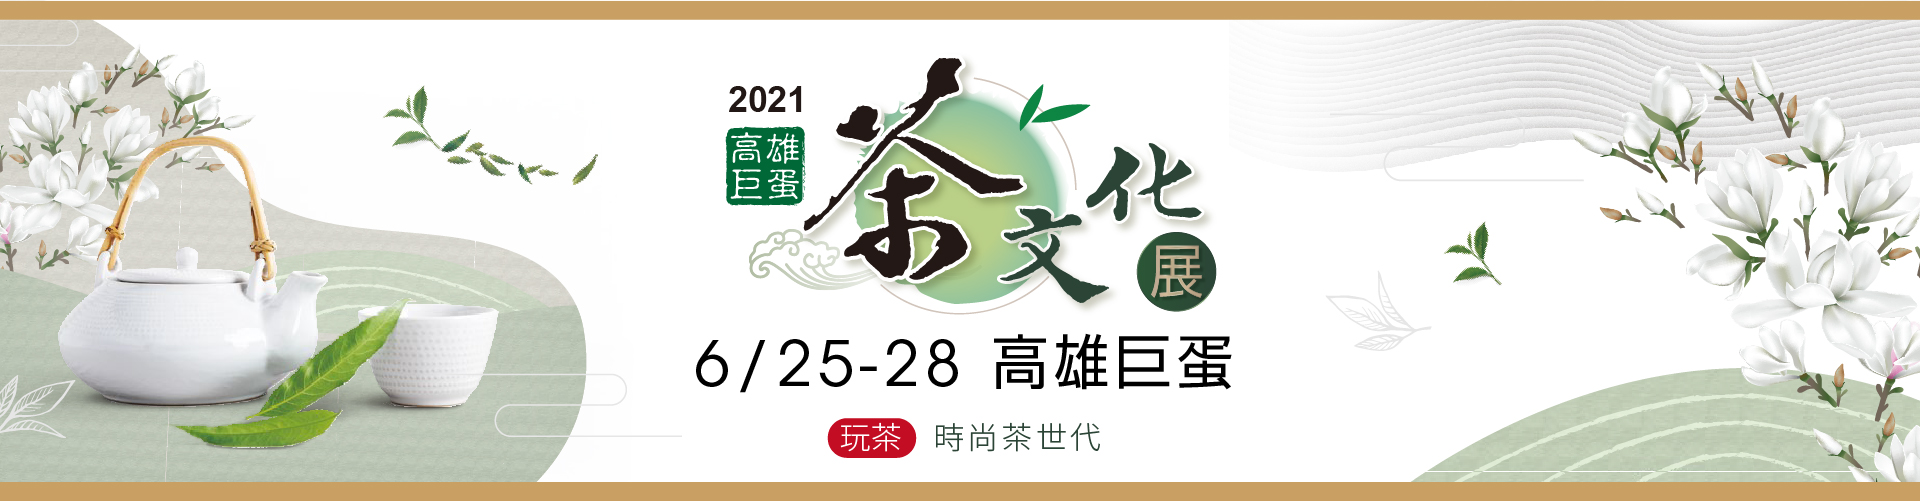 2021 高雄巨蛋茶文化展